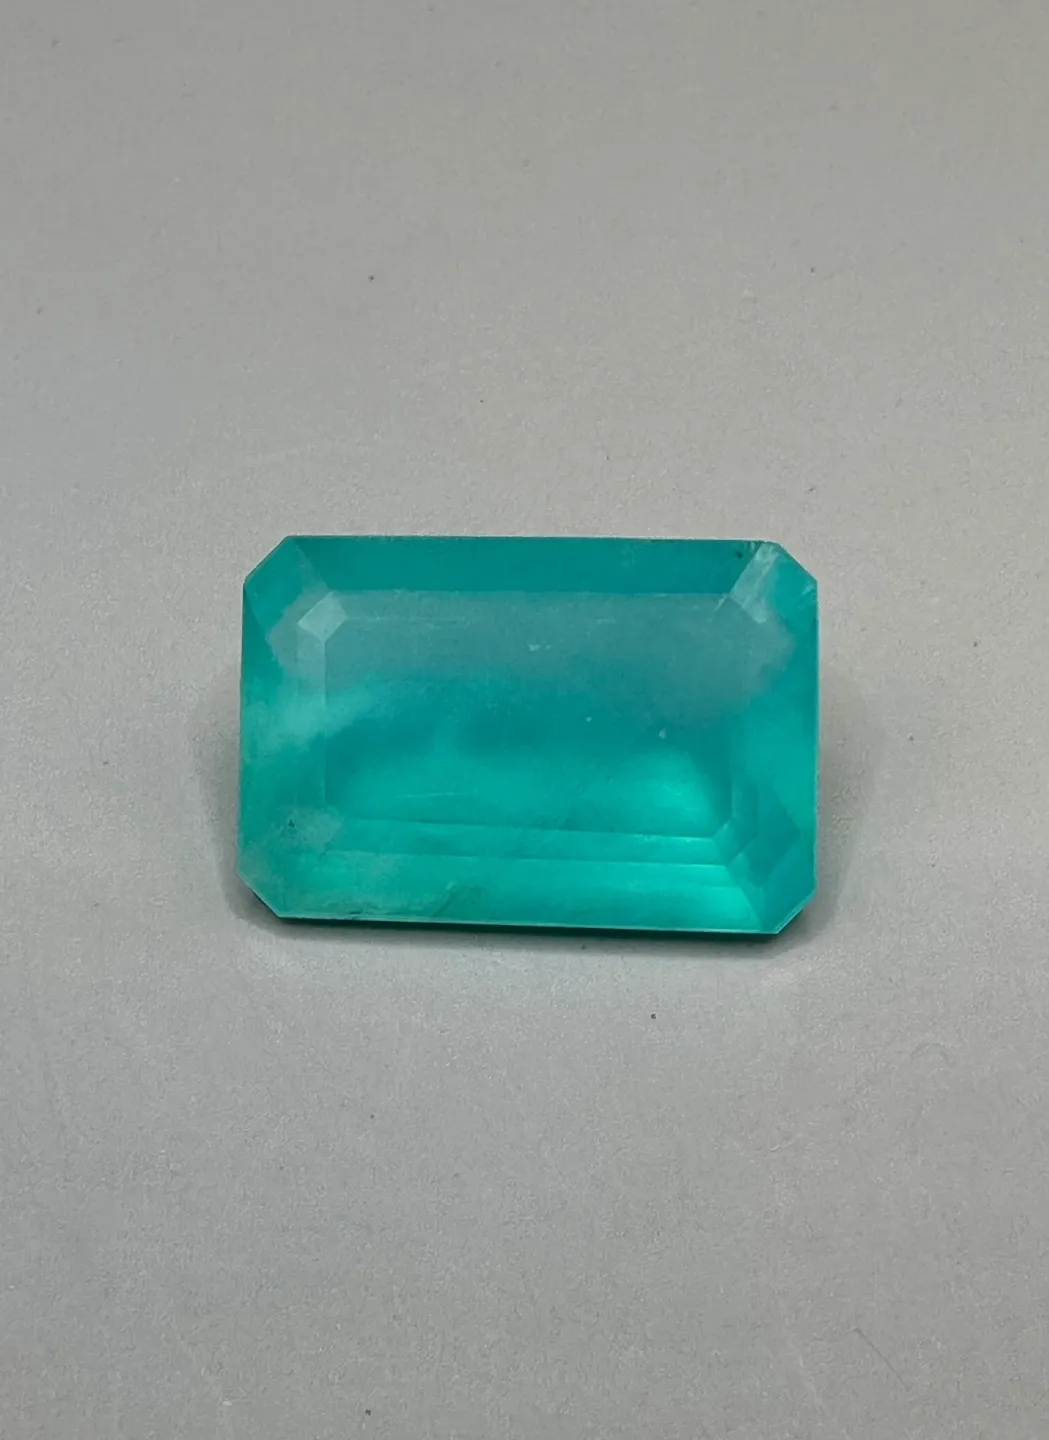 Gem Peruvian Blue Opal emerald cut 